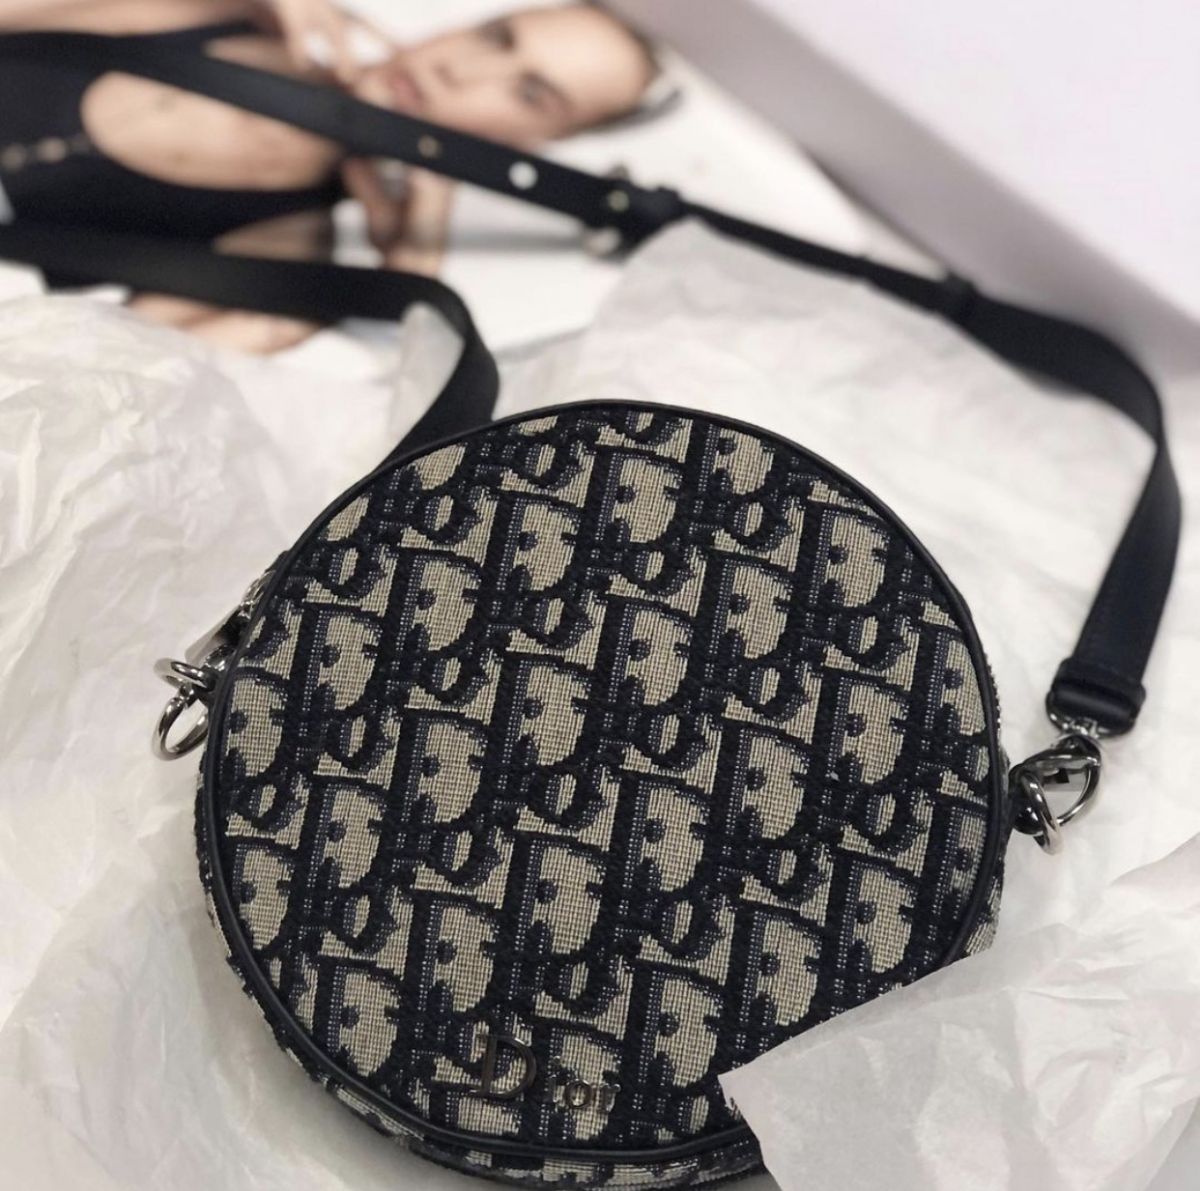 сумочка Christian Dior размер 15/15 цена 53 847 руб 